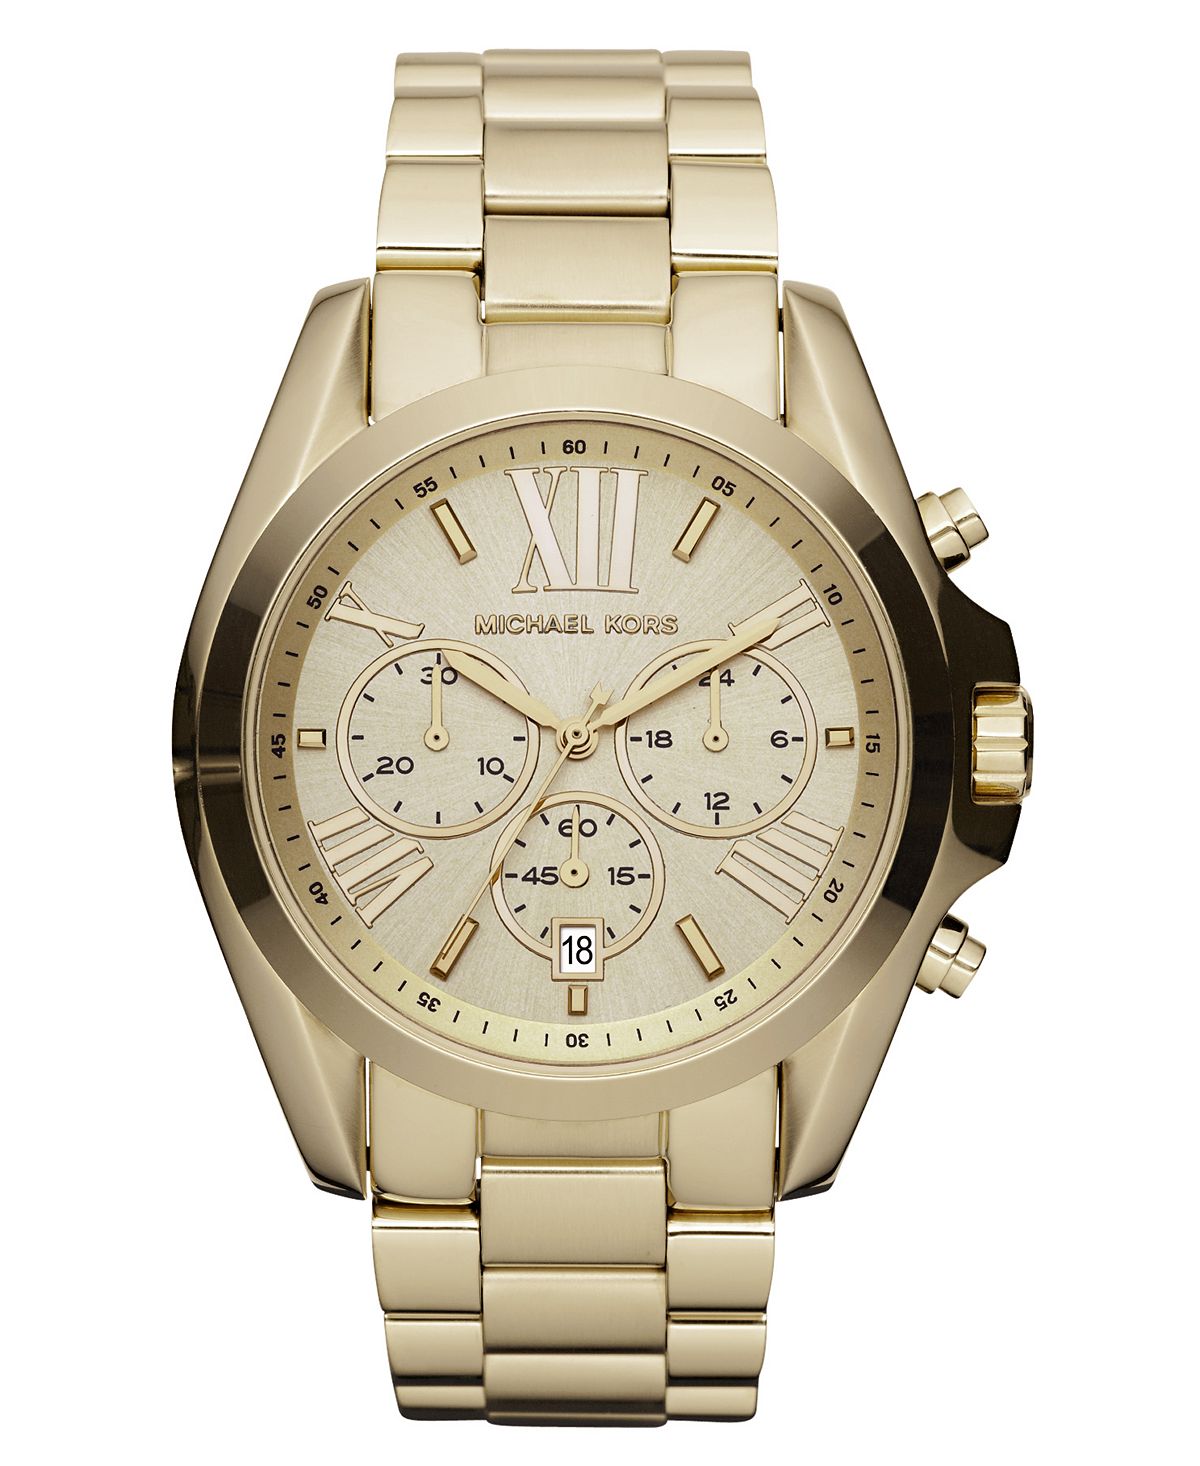 Часы-хронограф унисекс Bradshaw с золотистым браслетом из нержавеющей стали, 43 мм, MK5605 Michael Kors